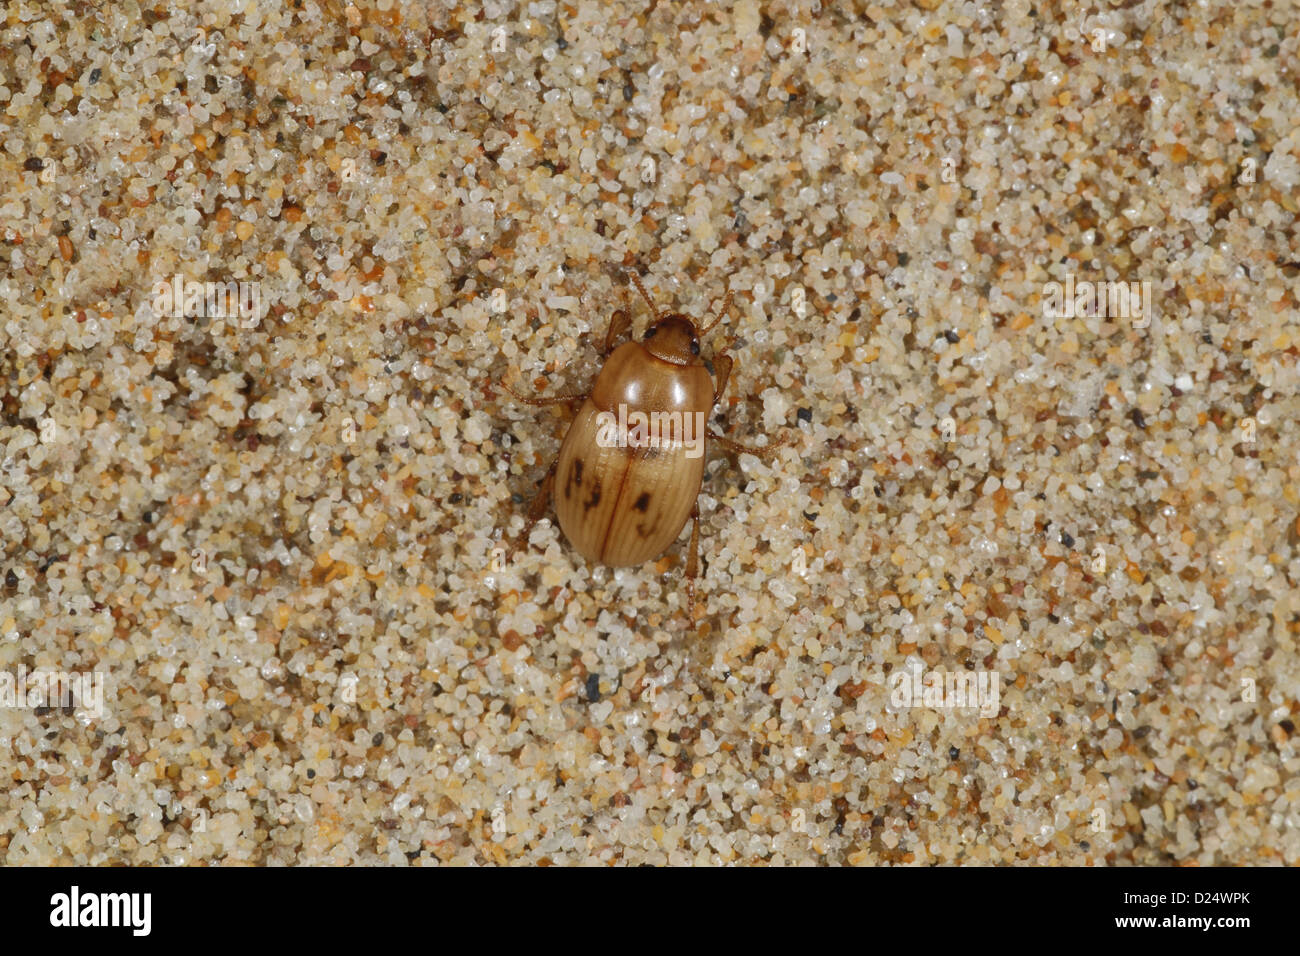 Darkling Beetle (Phaleria cadaverina) adulte, sous les débris de rivage sur plage, la péninsule de Gower, Glamorgan, Pays de Galles, août Banque D'Images